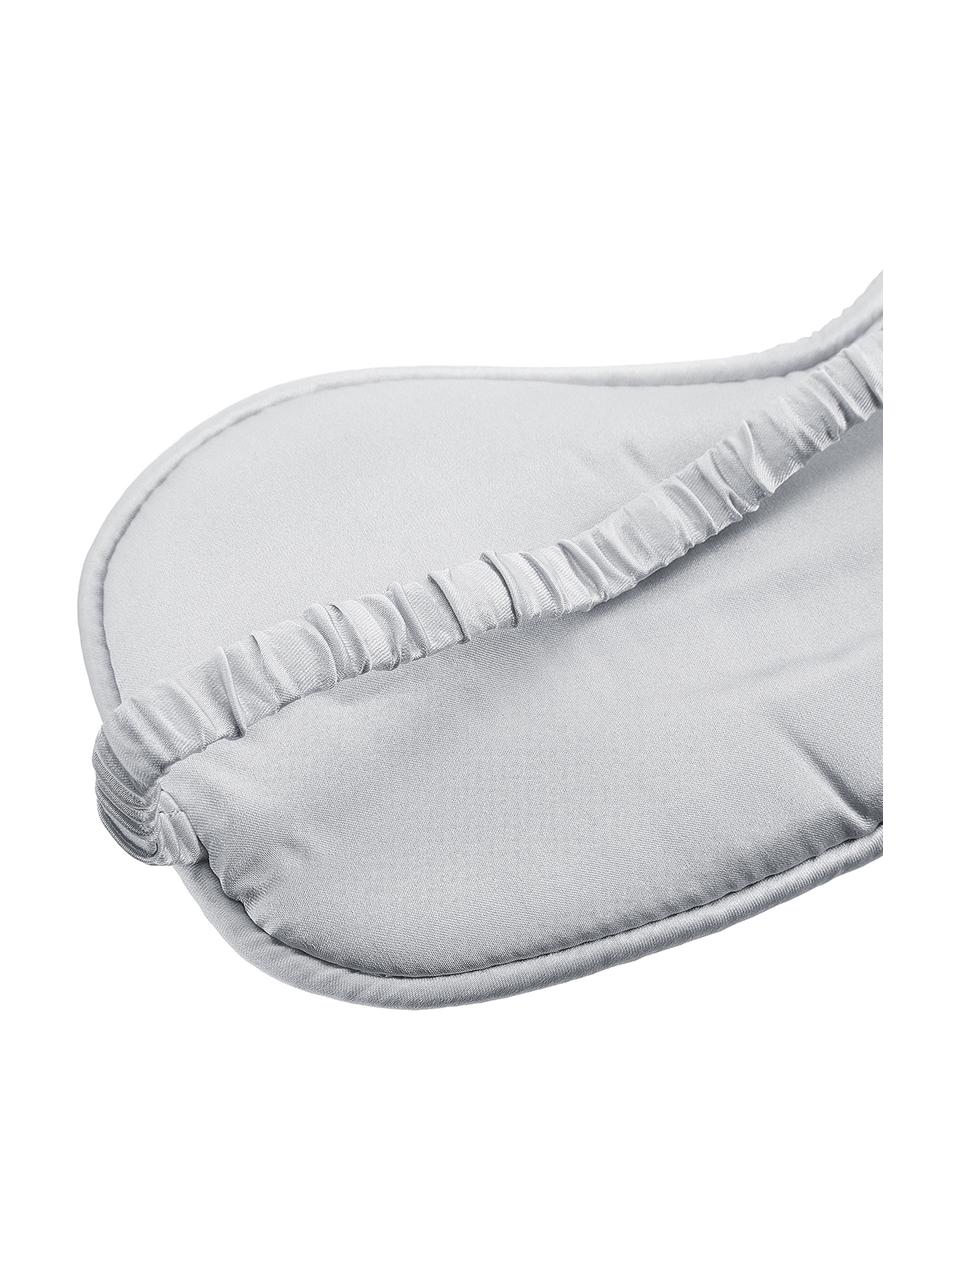 Seiden-Schlafmaske Silke, Vorderseite: 70% Kaschmir, 30% Merinow, Riemen: 100% Seide, Rosa Hellgrau, 21 x 9 cm